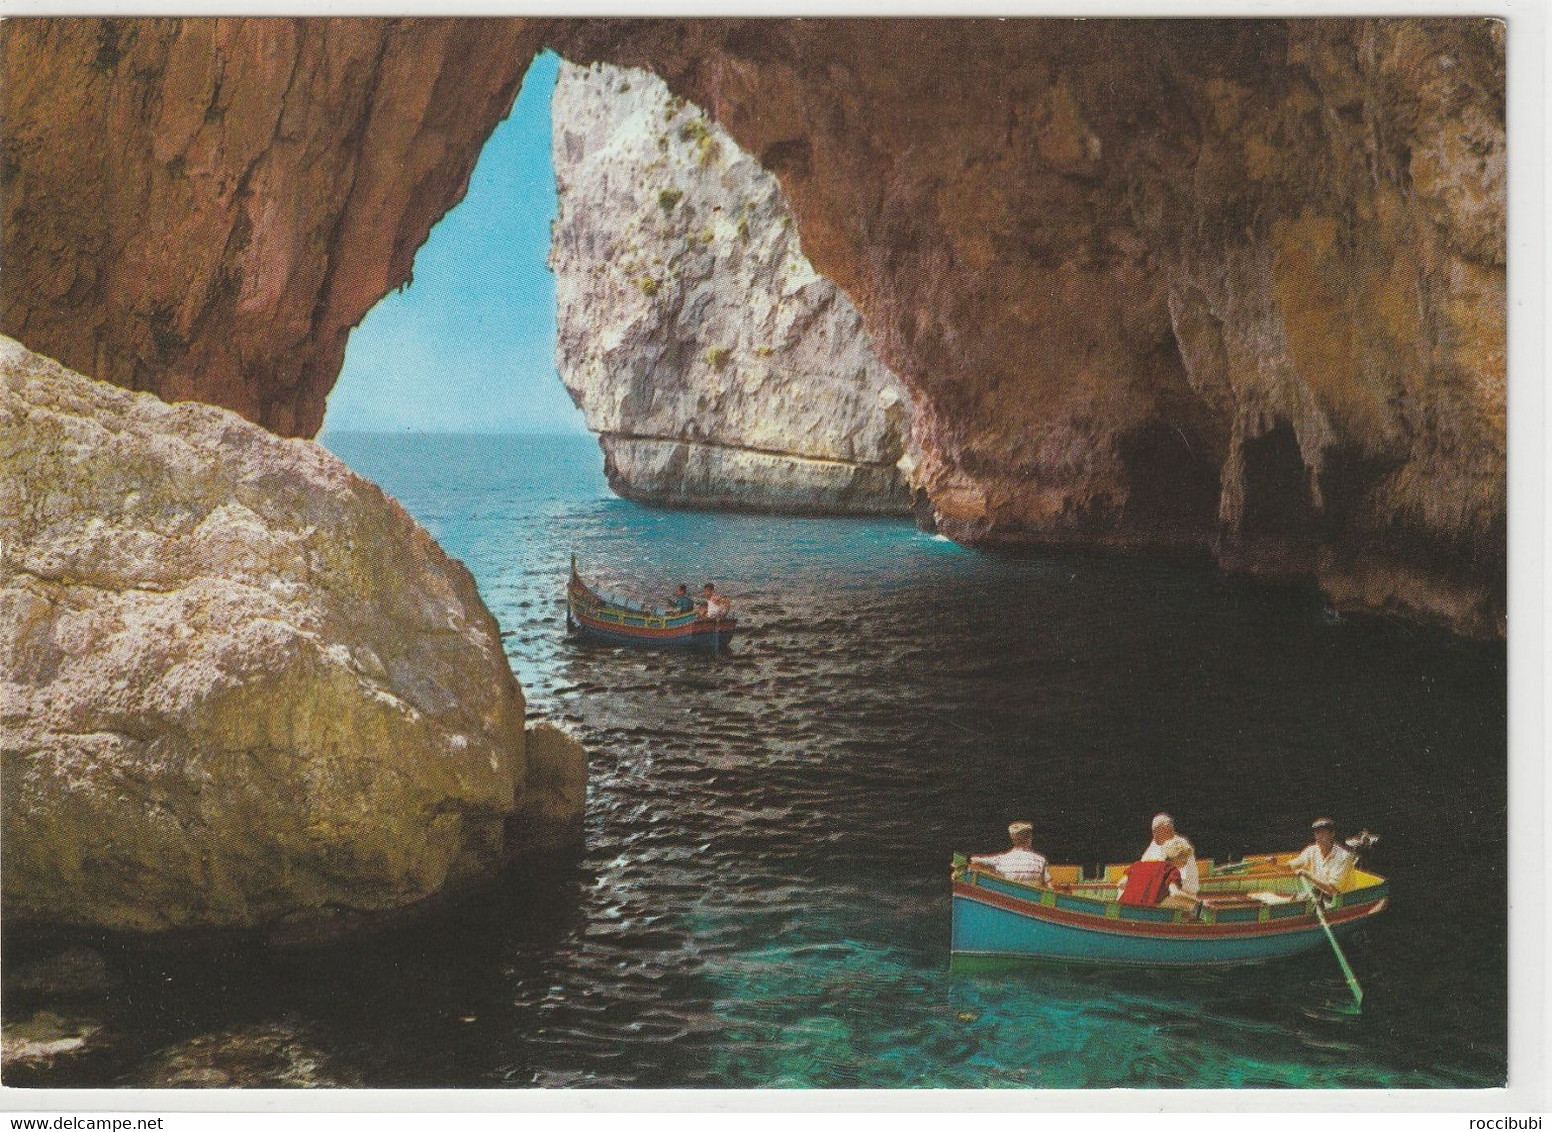 Blue Grotto - Malte